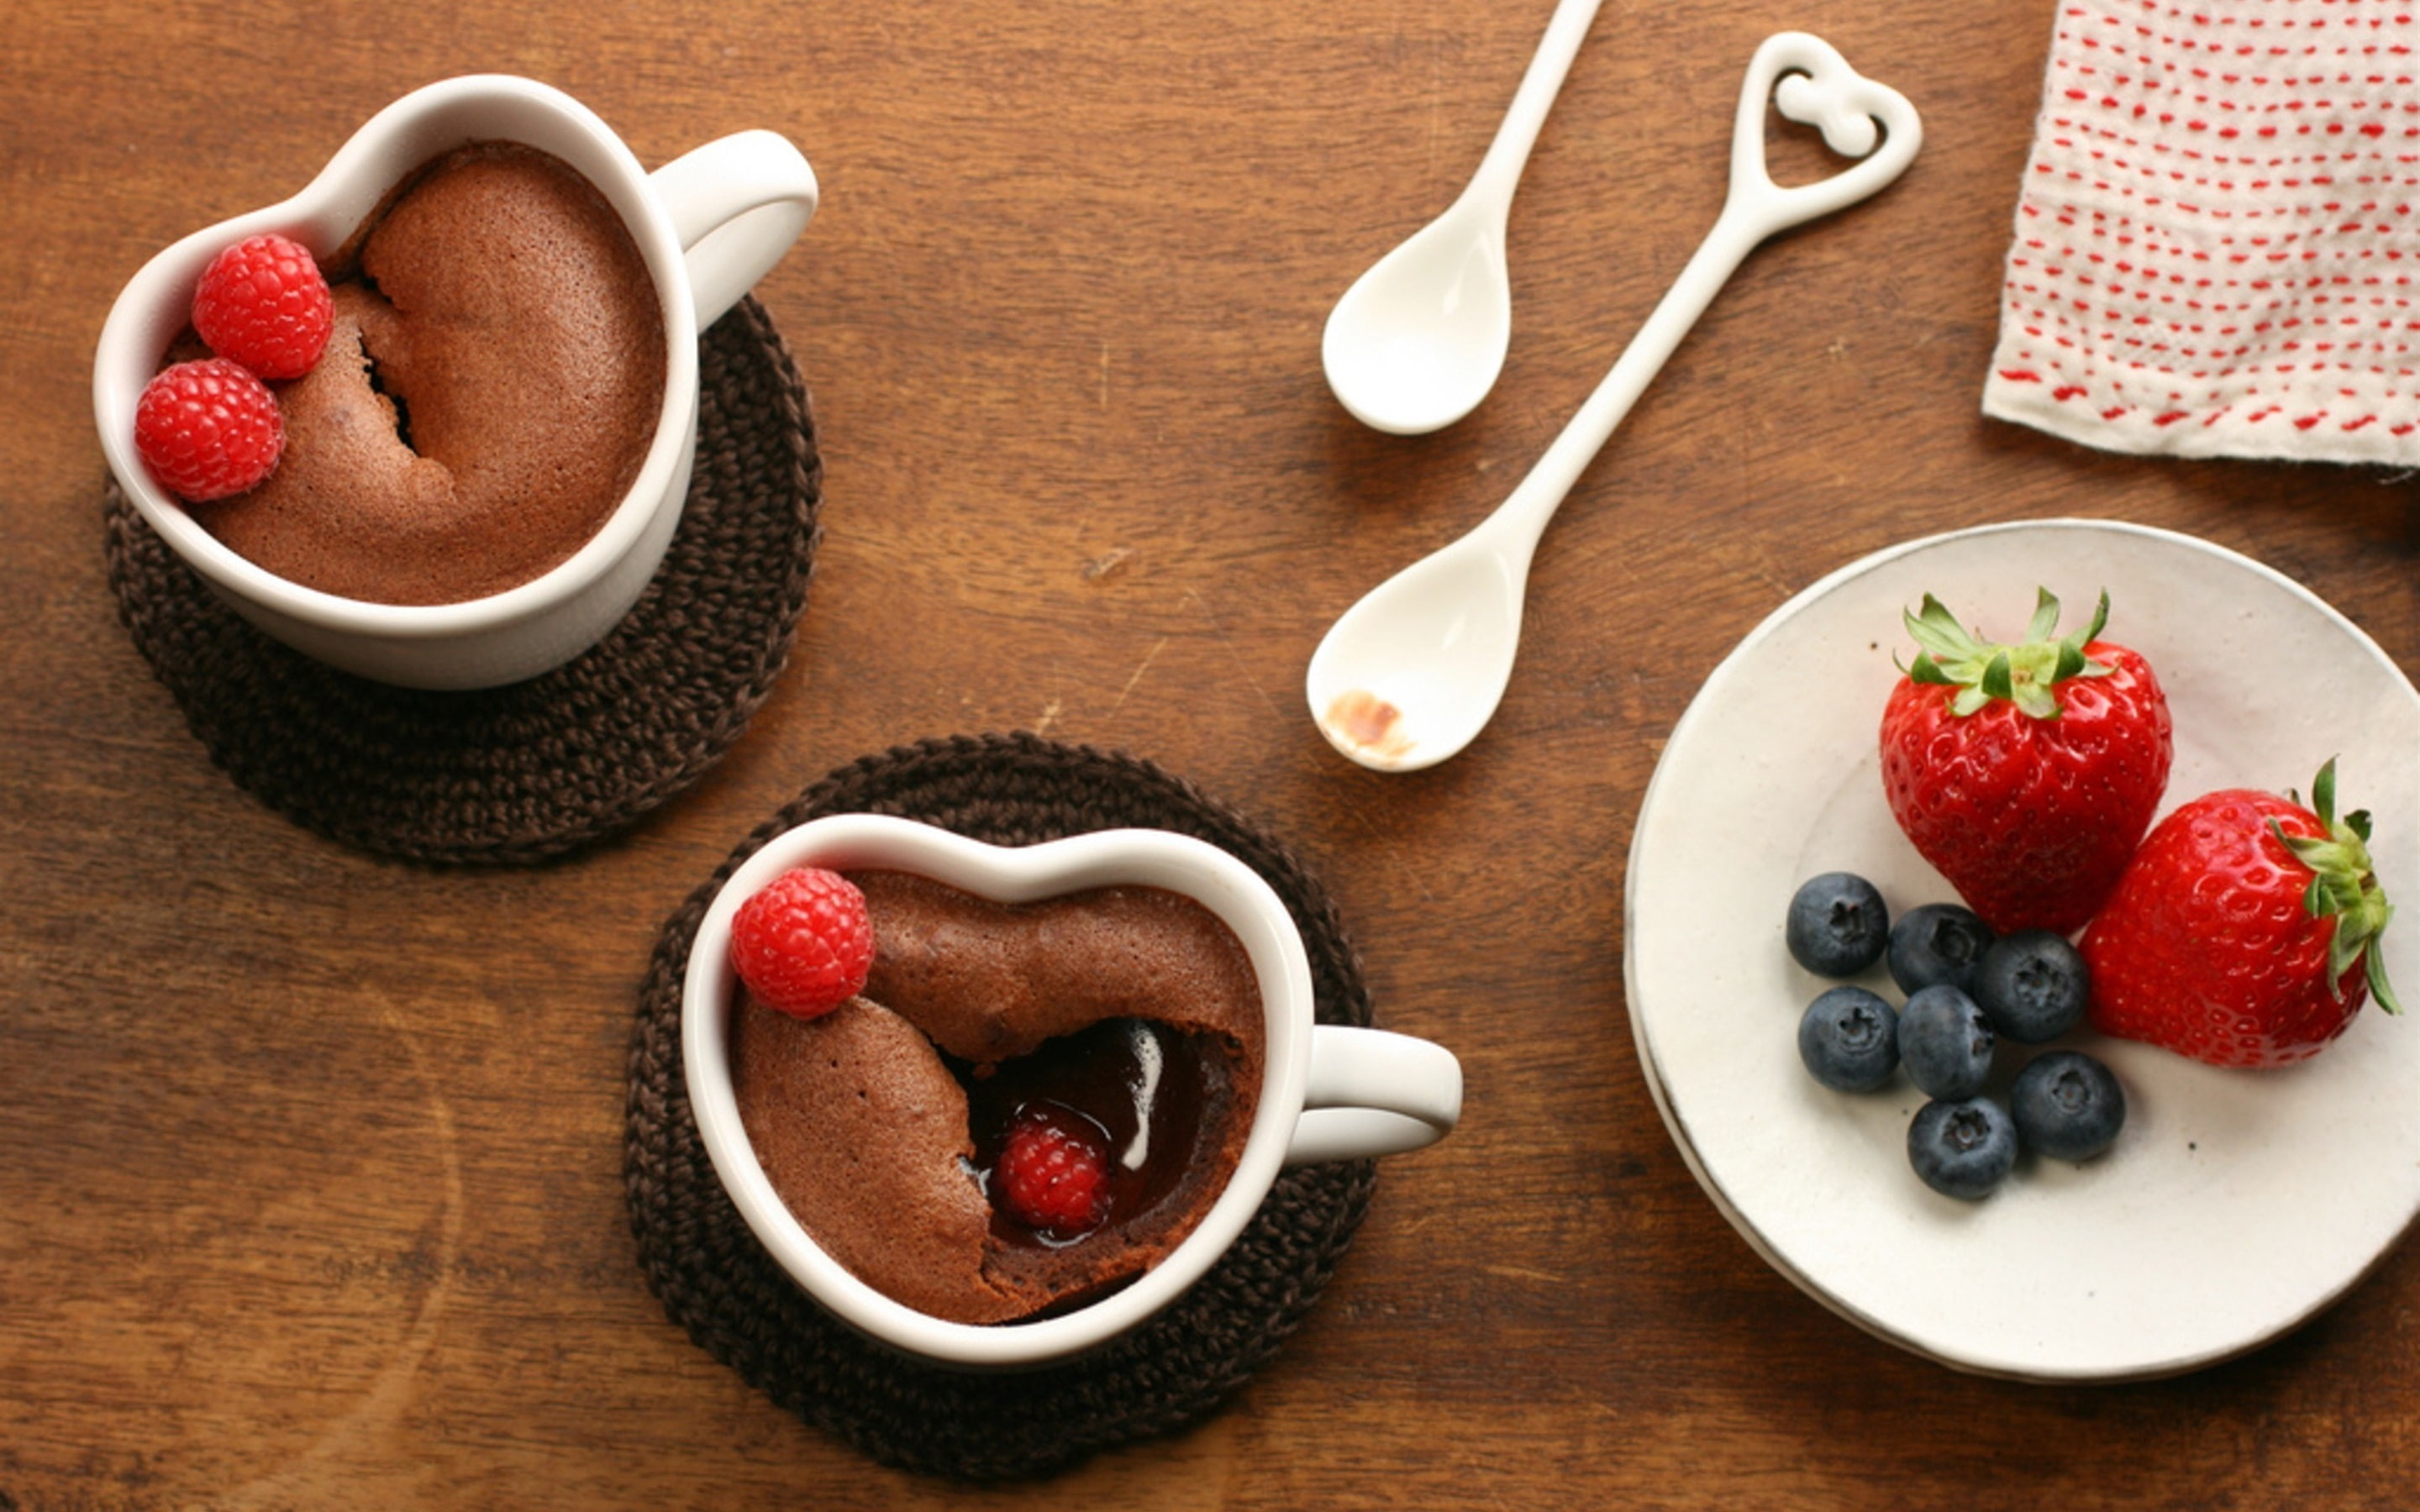 Chocolate dessert, cups, blackberries, strawberries, food, spoons